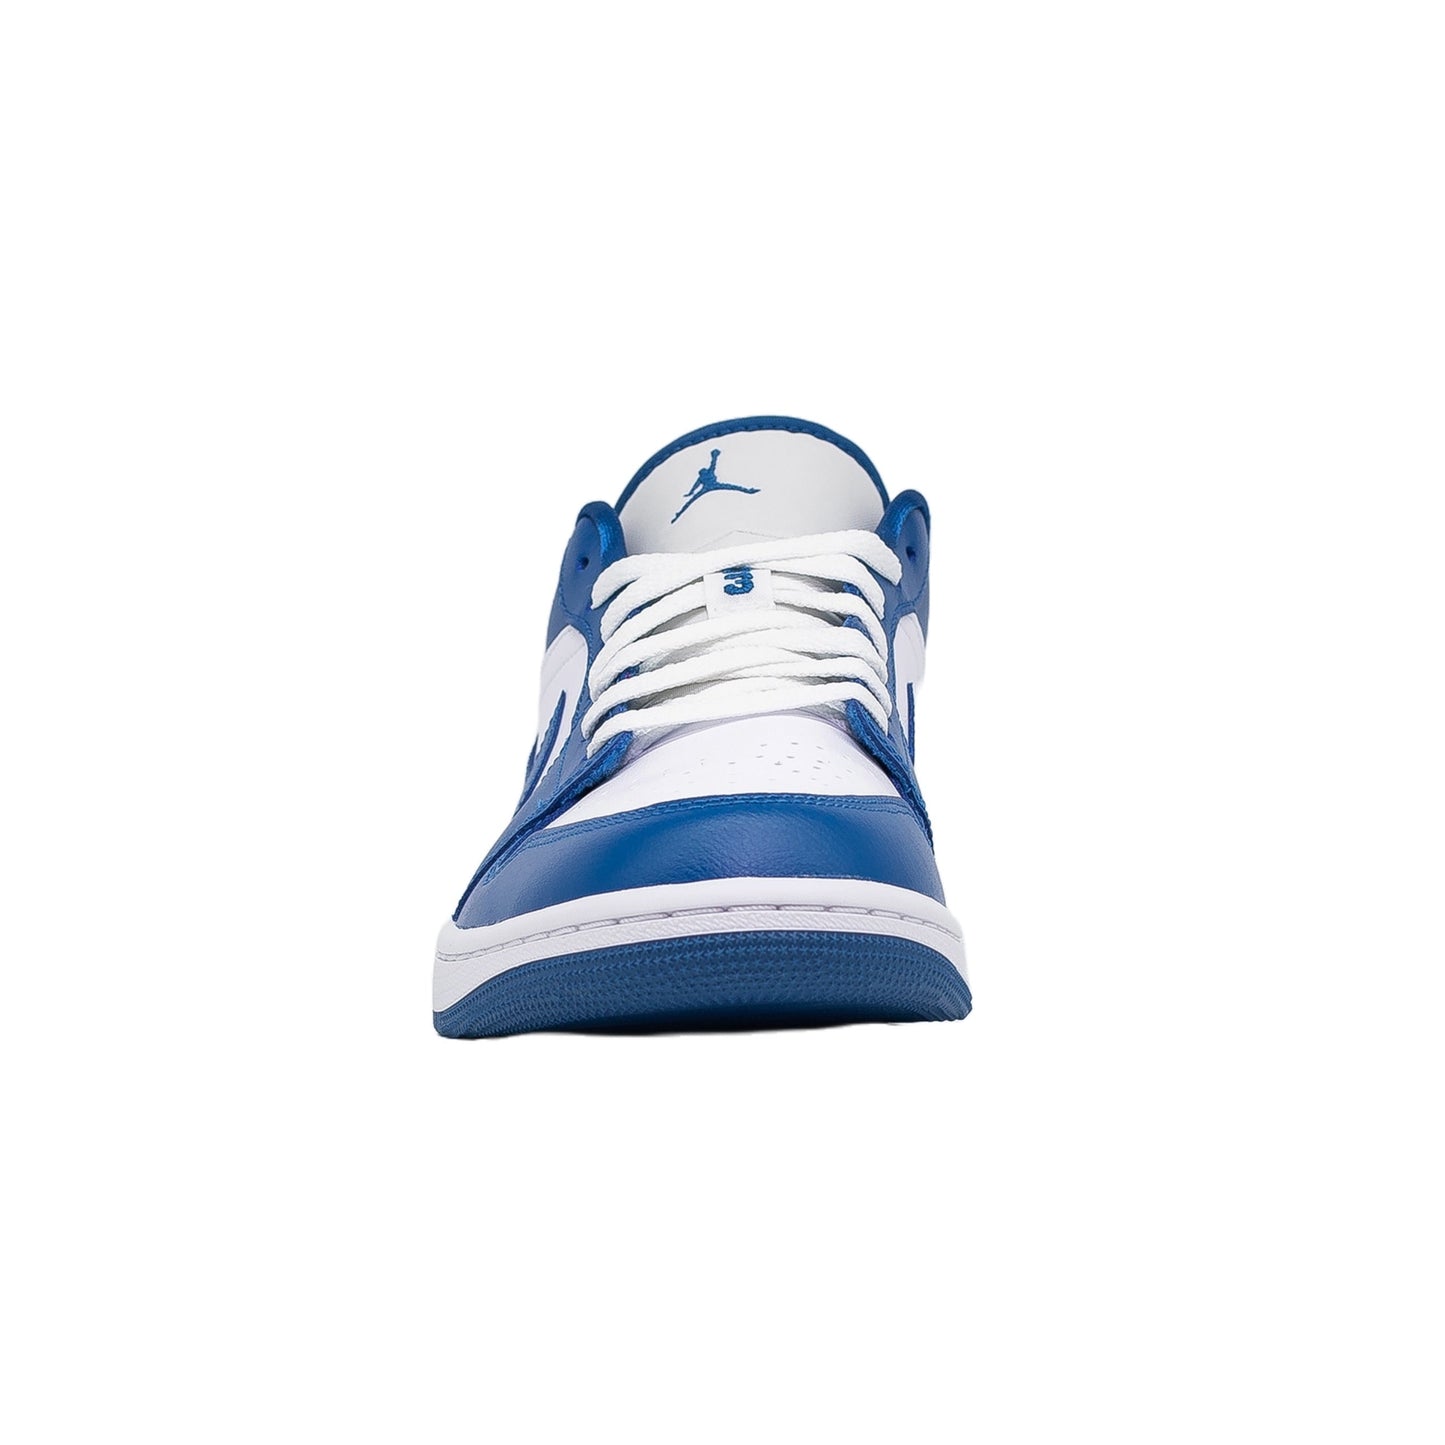 Women's Air Nike air jordan 1 low se mmd bg white mango pink blue dh7547-100 7y womens 8.5, Marina Blue